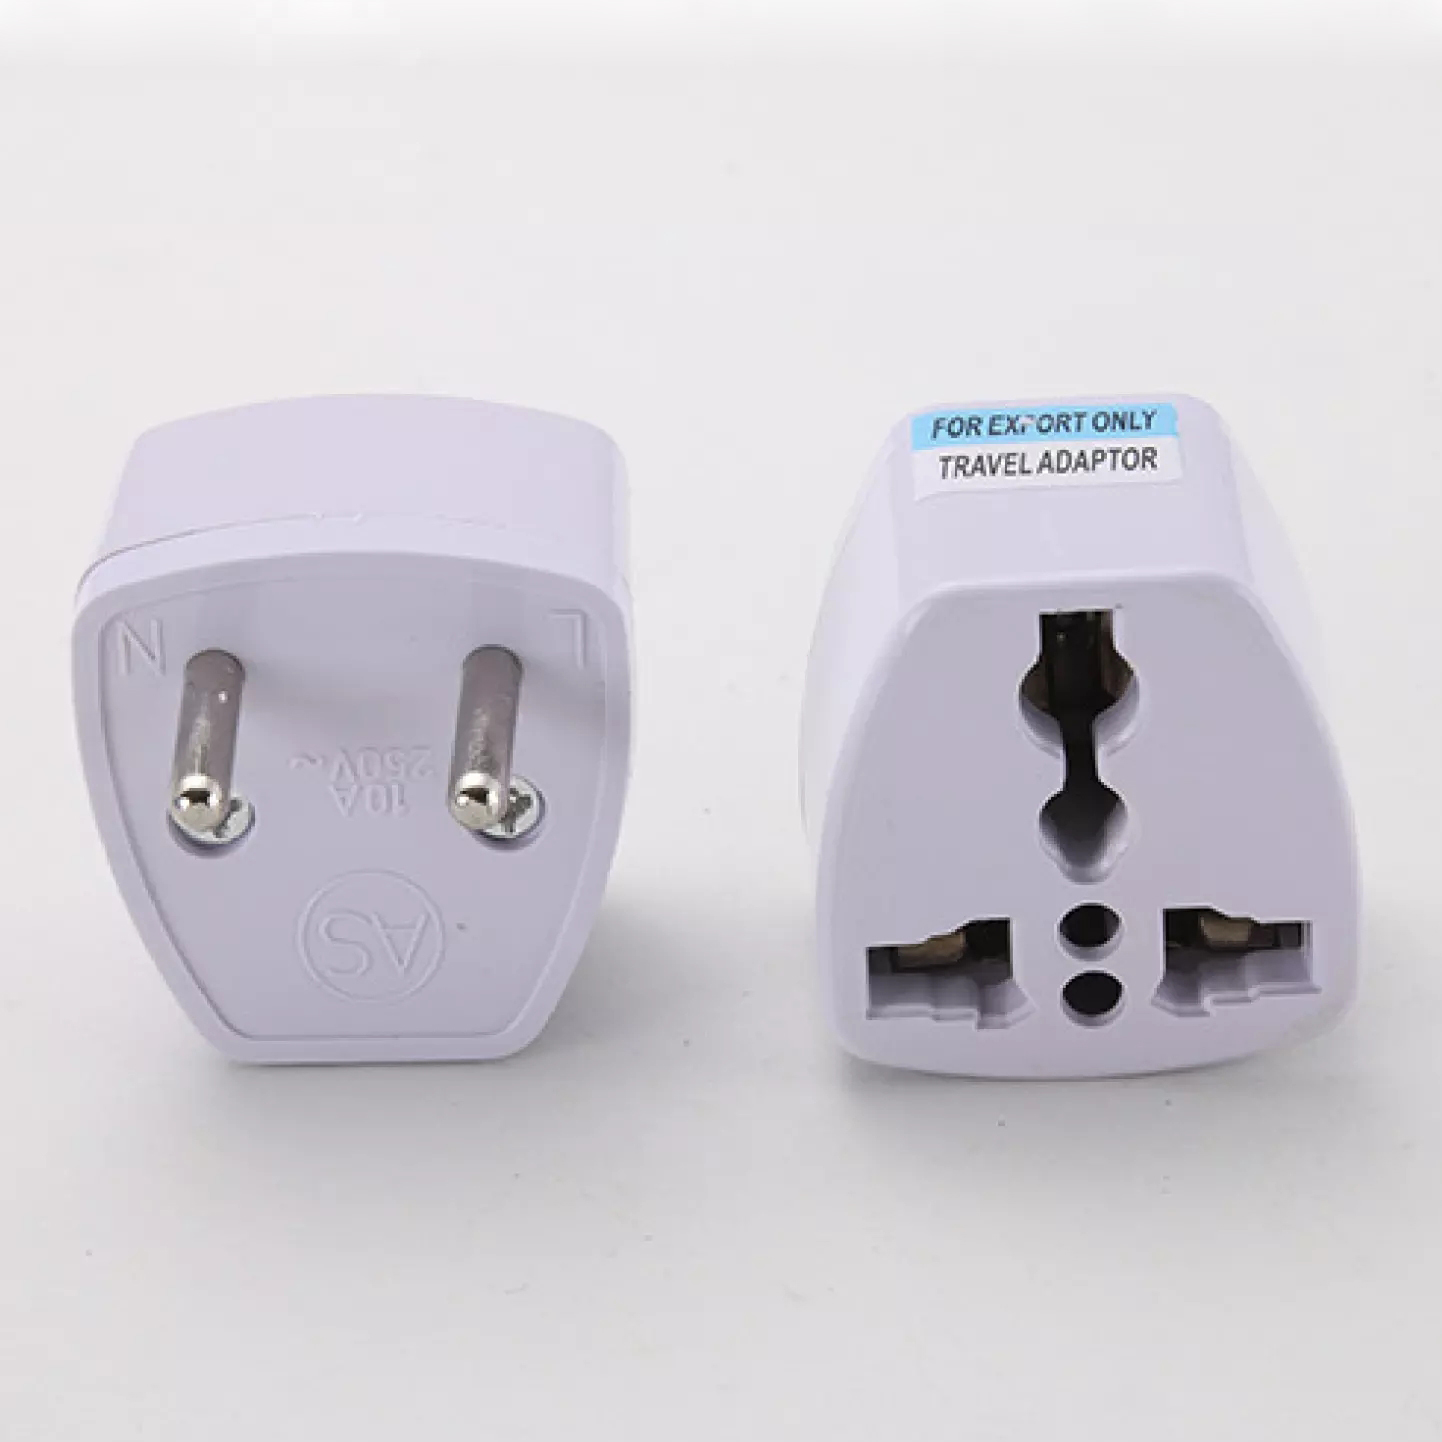 หัวแปลงปลั๊กไฟ หัวแปลง ปลั๊กแปลง หัวแปลงปลั๊กจีน หัวแปลงปลั๊กไฟขาแบน ปลั๊กแปลง 3 ขาเป็น 2 ขาแบน ทนไฟฟ้าได้ 250V 10A / Universal Travel Plug Adapter